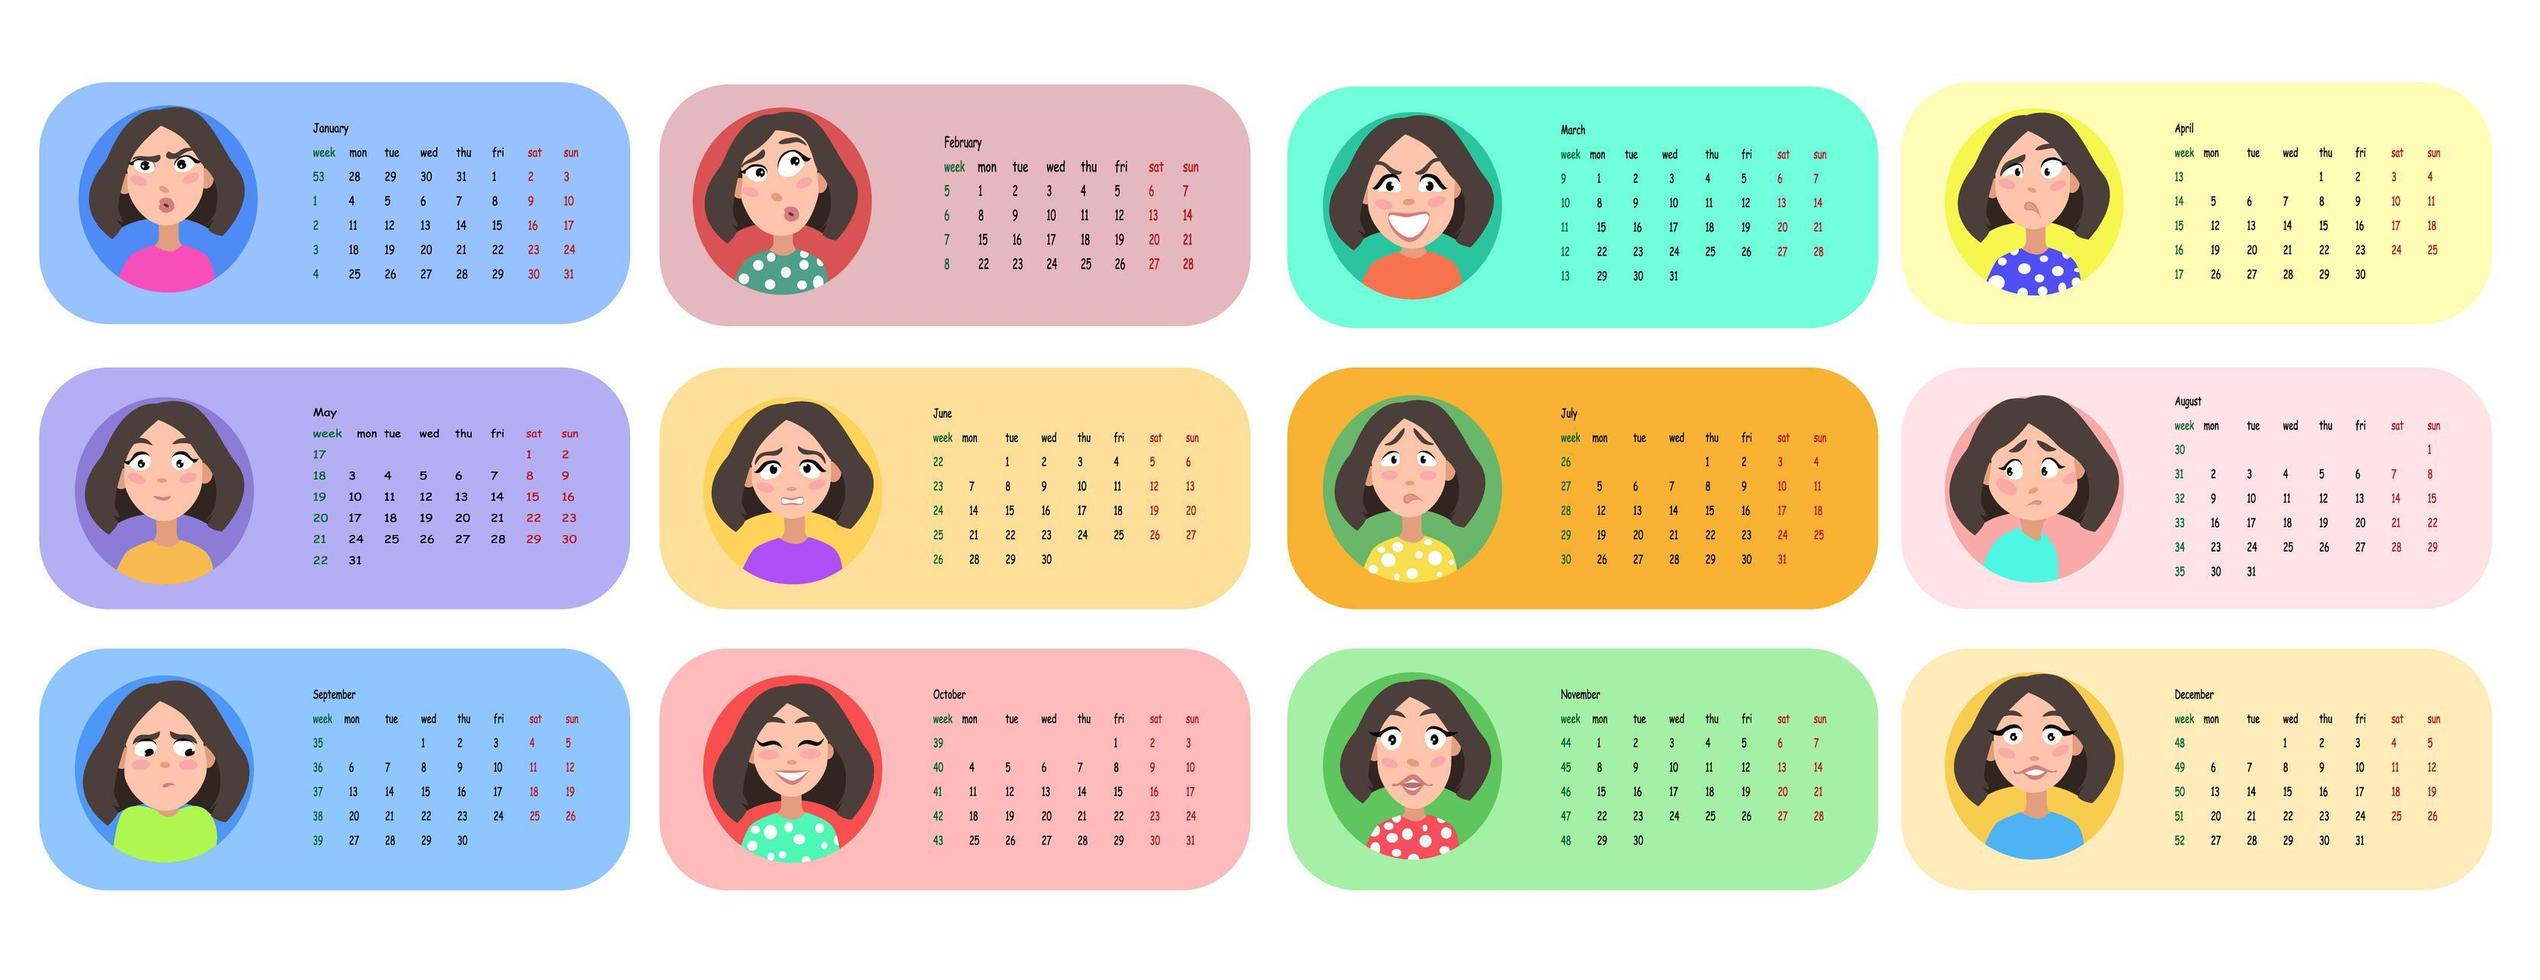 weibliches Benutzerprofil. Kalender für 2021 für 12 Monate. vektor